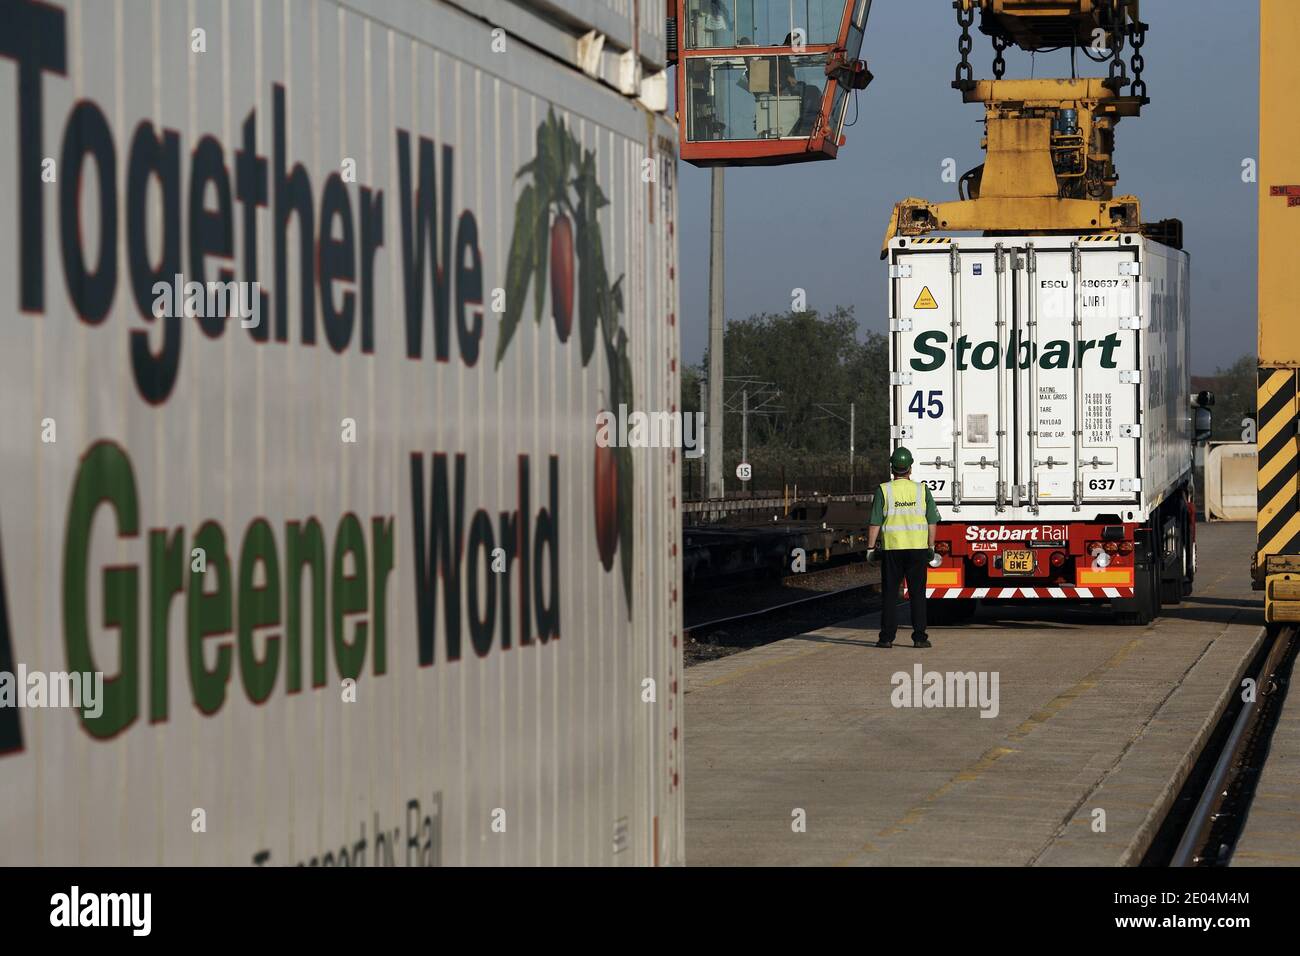 Eddie Stobart ha lanciato un viaggio ferroviario a basso contenuto di carbonio in tutta Europa per portare frutta e verdura spagnola in treno a Dagenham, a est di Londra. Foto Stock